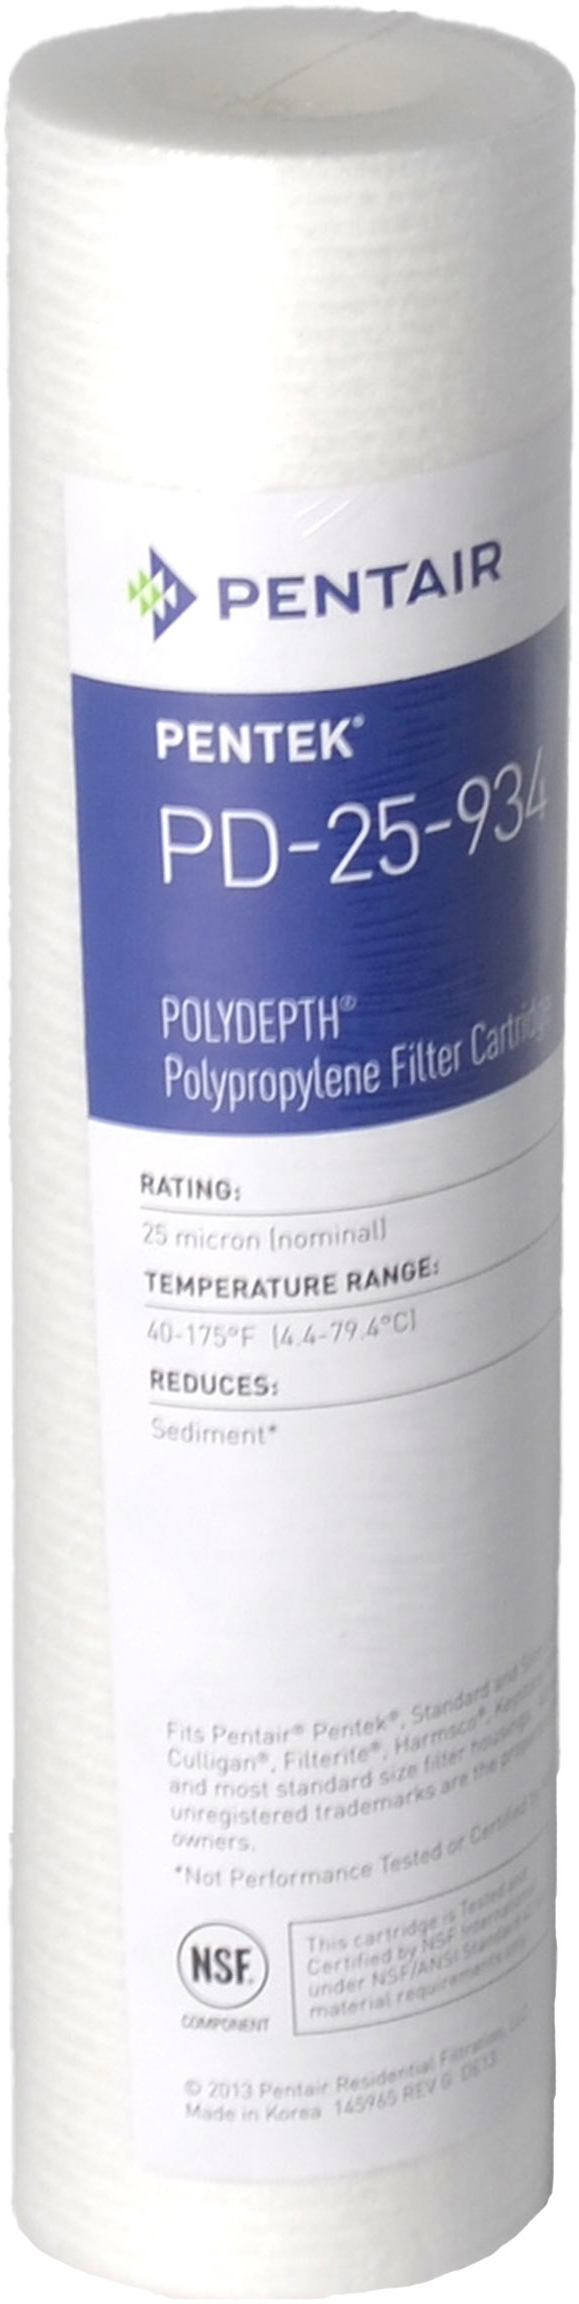 Купить картридж pentek для холодной воды Pentek PD-25-934 Polydepth (155751-43) в Киеве